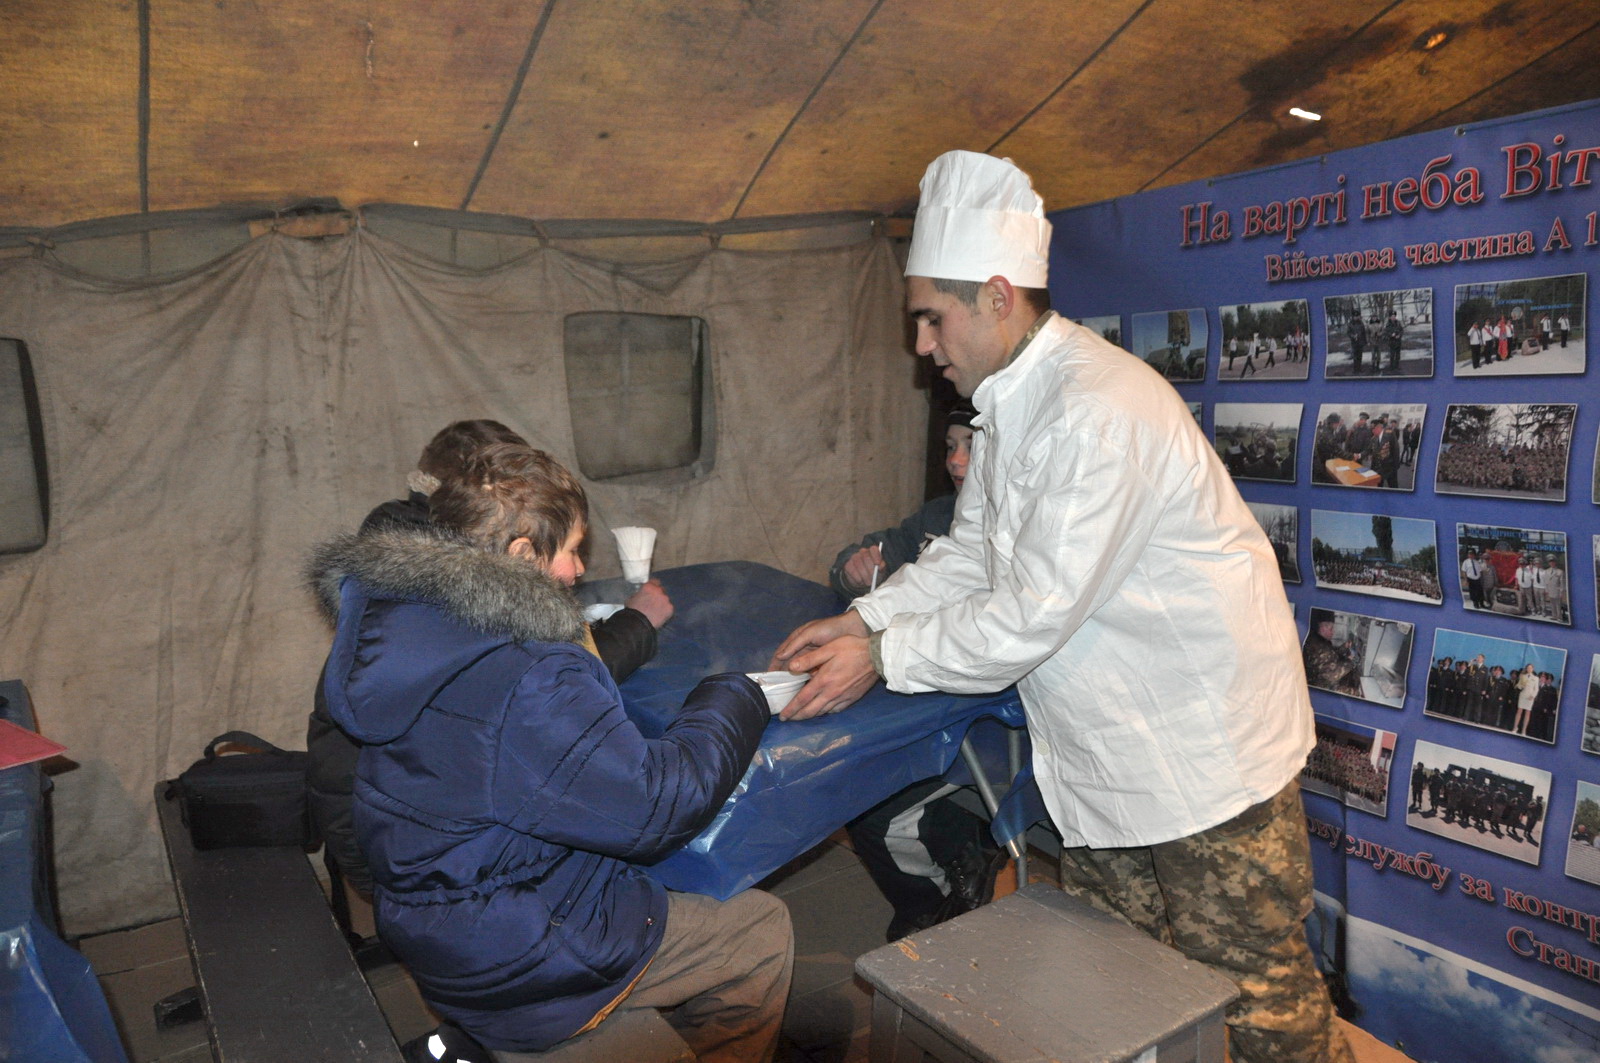 Из-за плохих погодных условий солдаты ВСУ оказывают помощь украинцам, помогая ликвидировать последствия непогоды и кормят людей в пунктах обогрева - Минобороны опубликовало фото